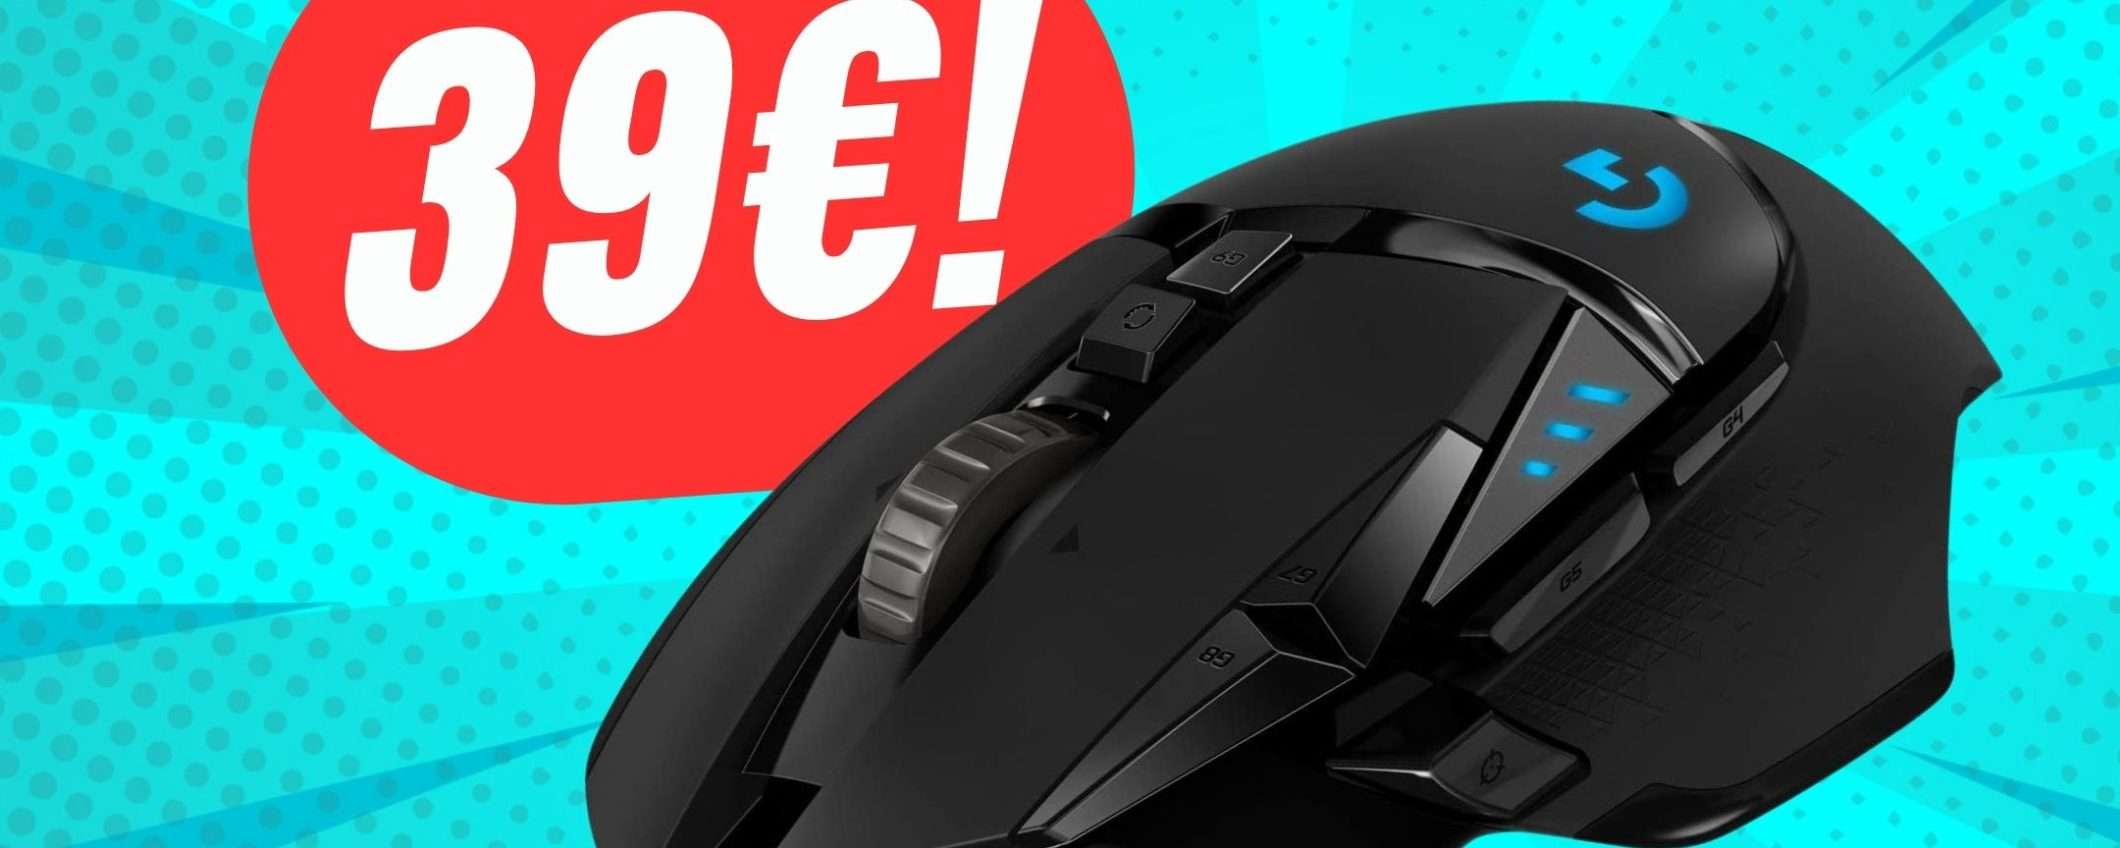 L'iconico Logitech G G502 HERO costa solo 39€ grazie alle OFFERTE di PRIMAVERA